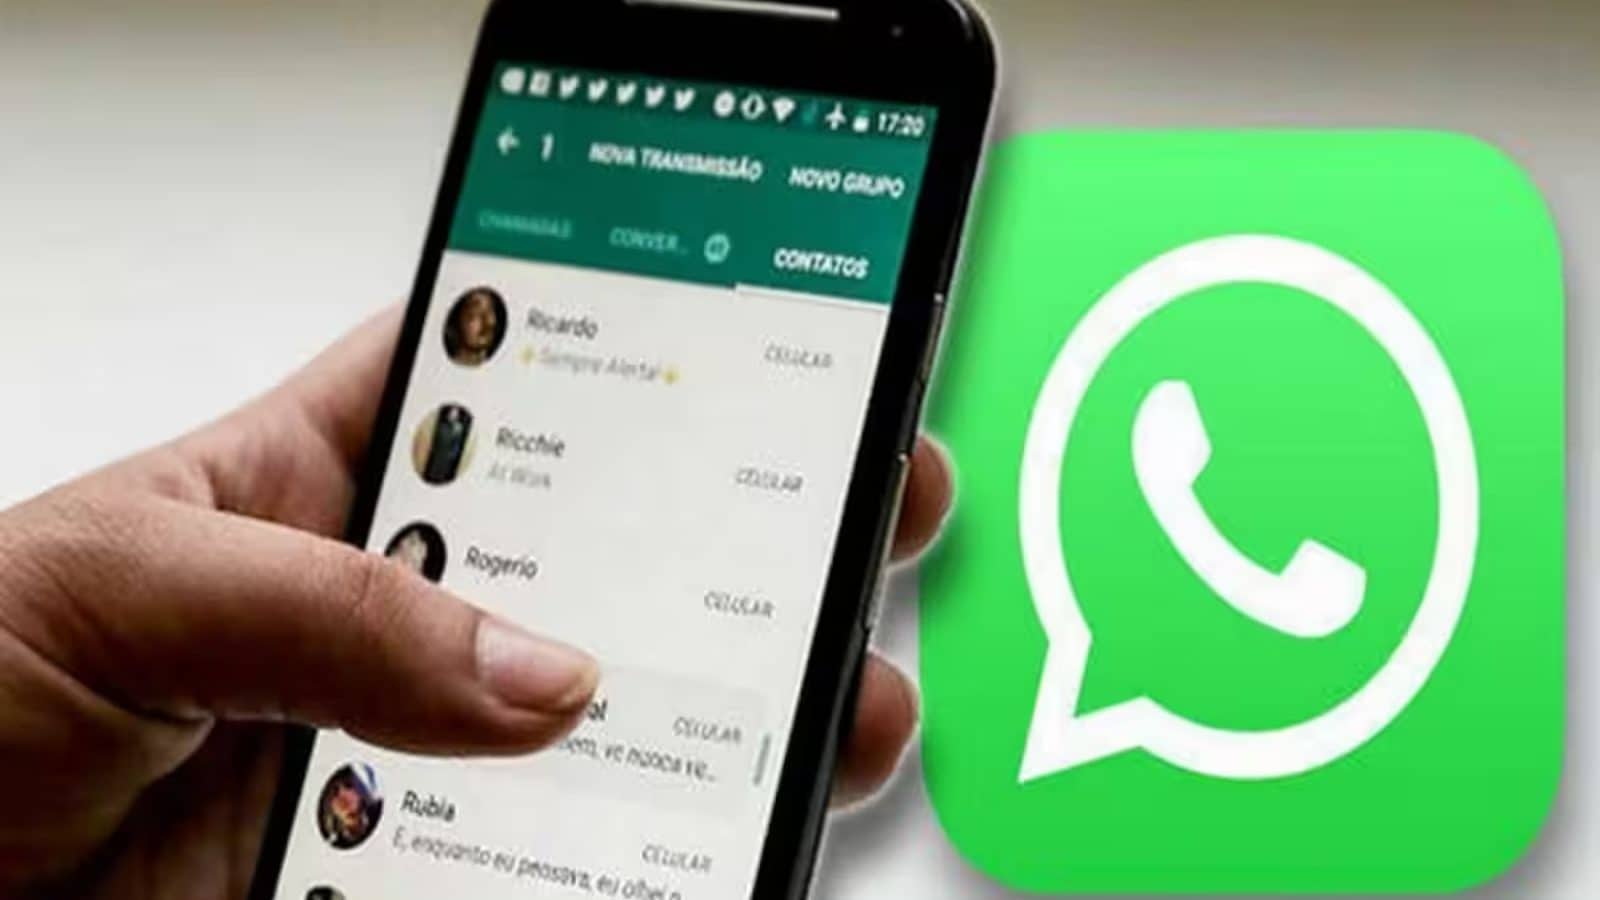 WhatsApp ने भारत में 45 लाख से अधिक खातों पर लगाया प्रतिबंध WhatsApp bans over 4.5 million accounts in India
